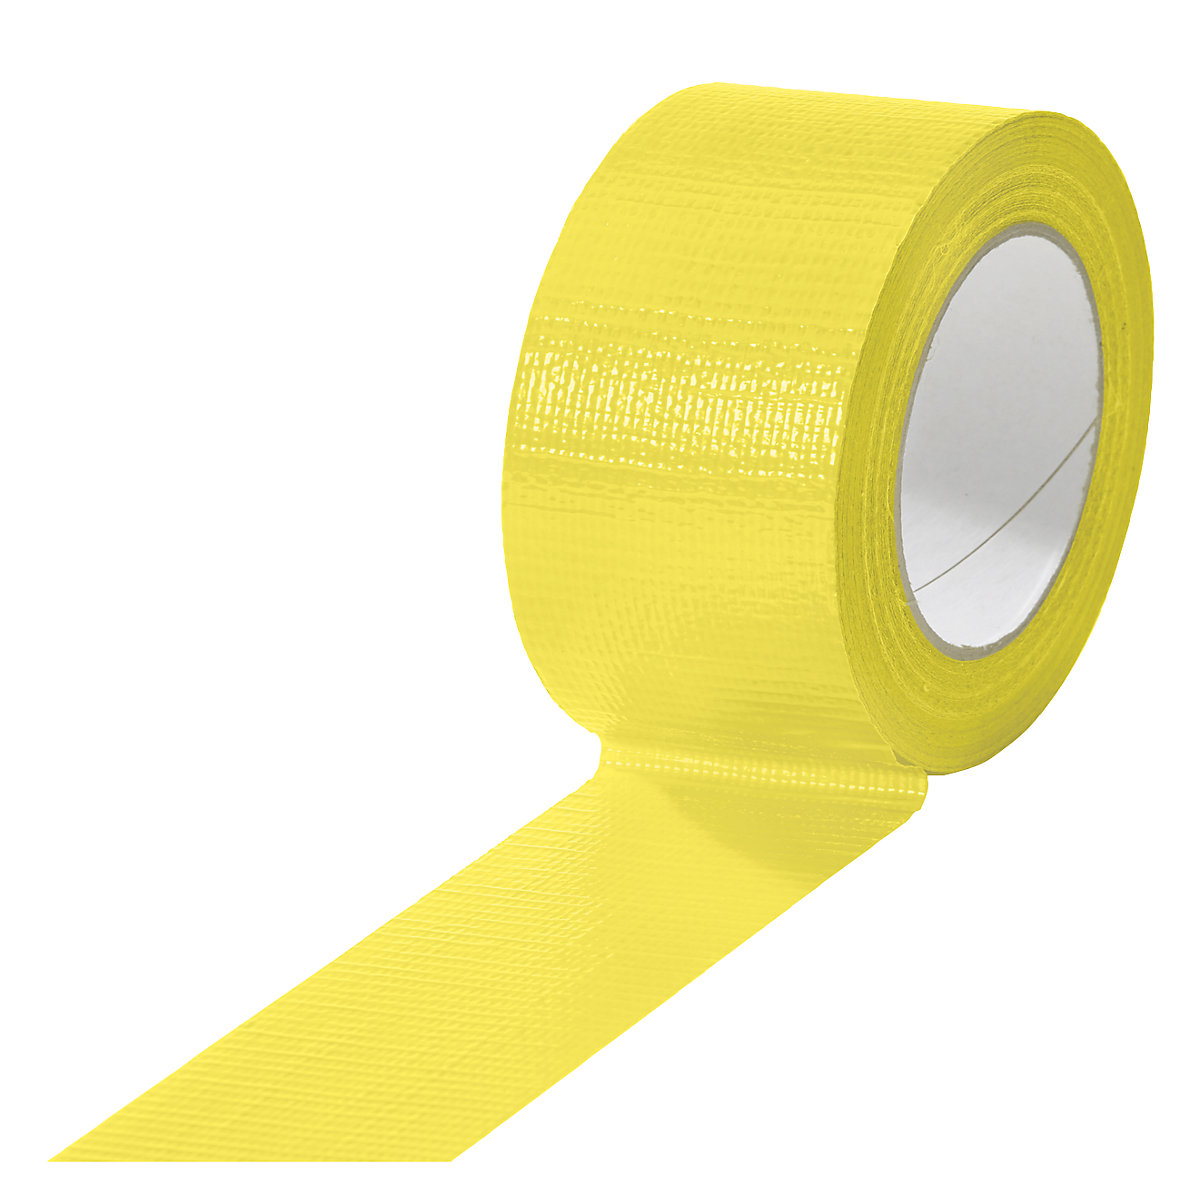 Taśma tkaninowa, w różnych kolorach, opak. 18 rolek, żółta, szer. taśmy 50 mm-16